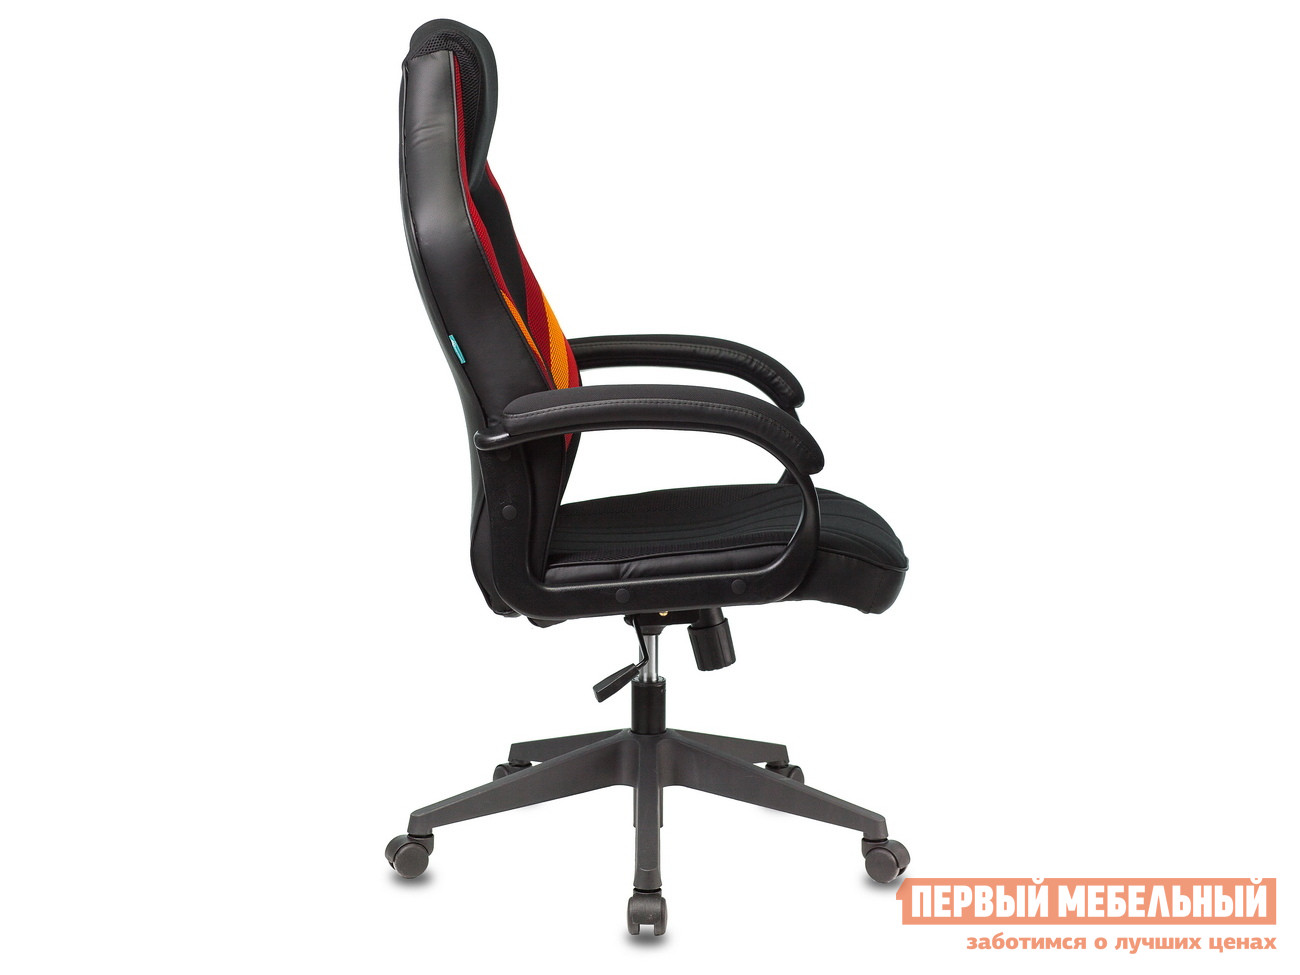 Игровое кресло  VIKING 3 AERO Красный, оранжевый / Черный иск. кожа, ткань от Первый Мебельный